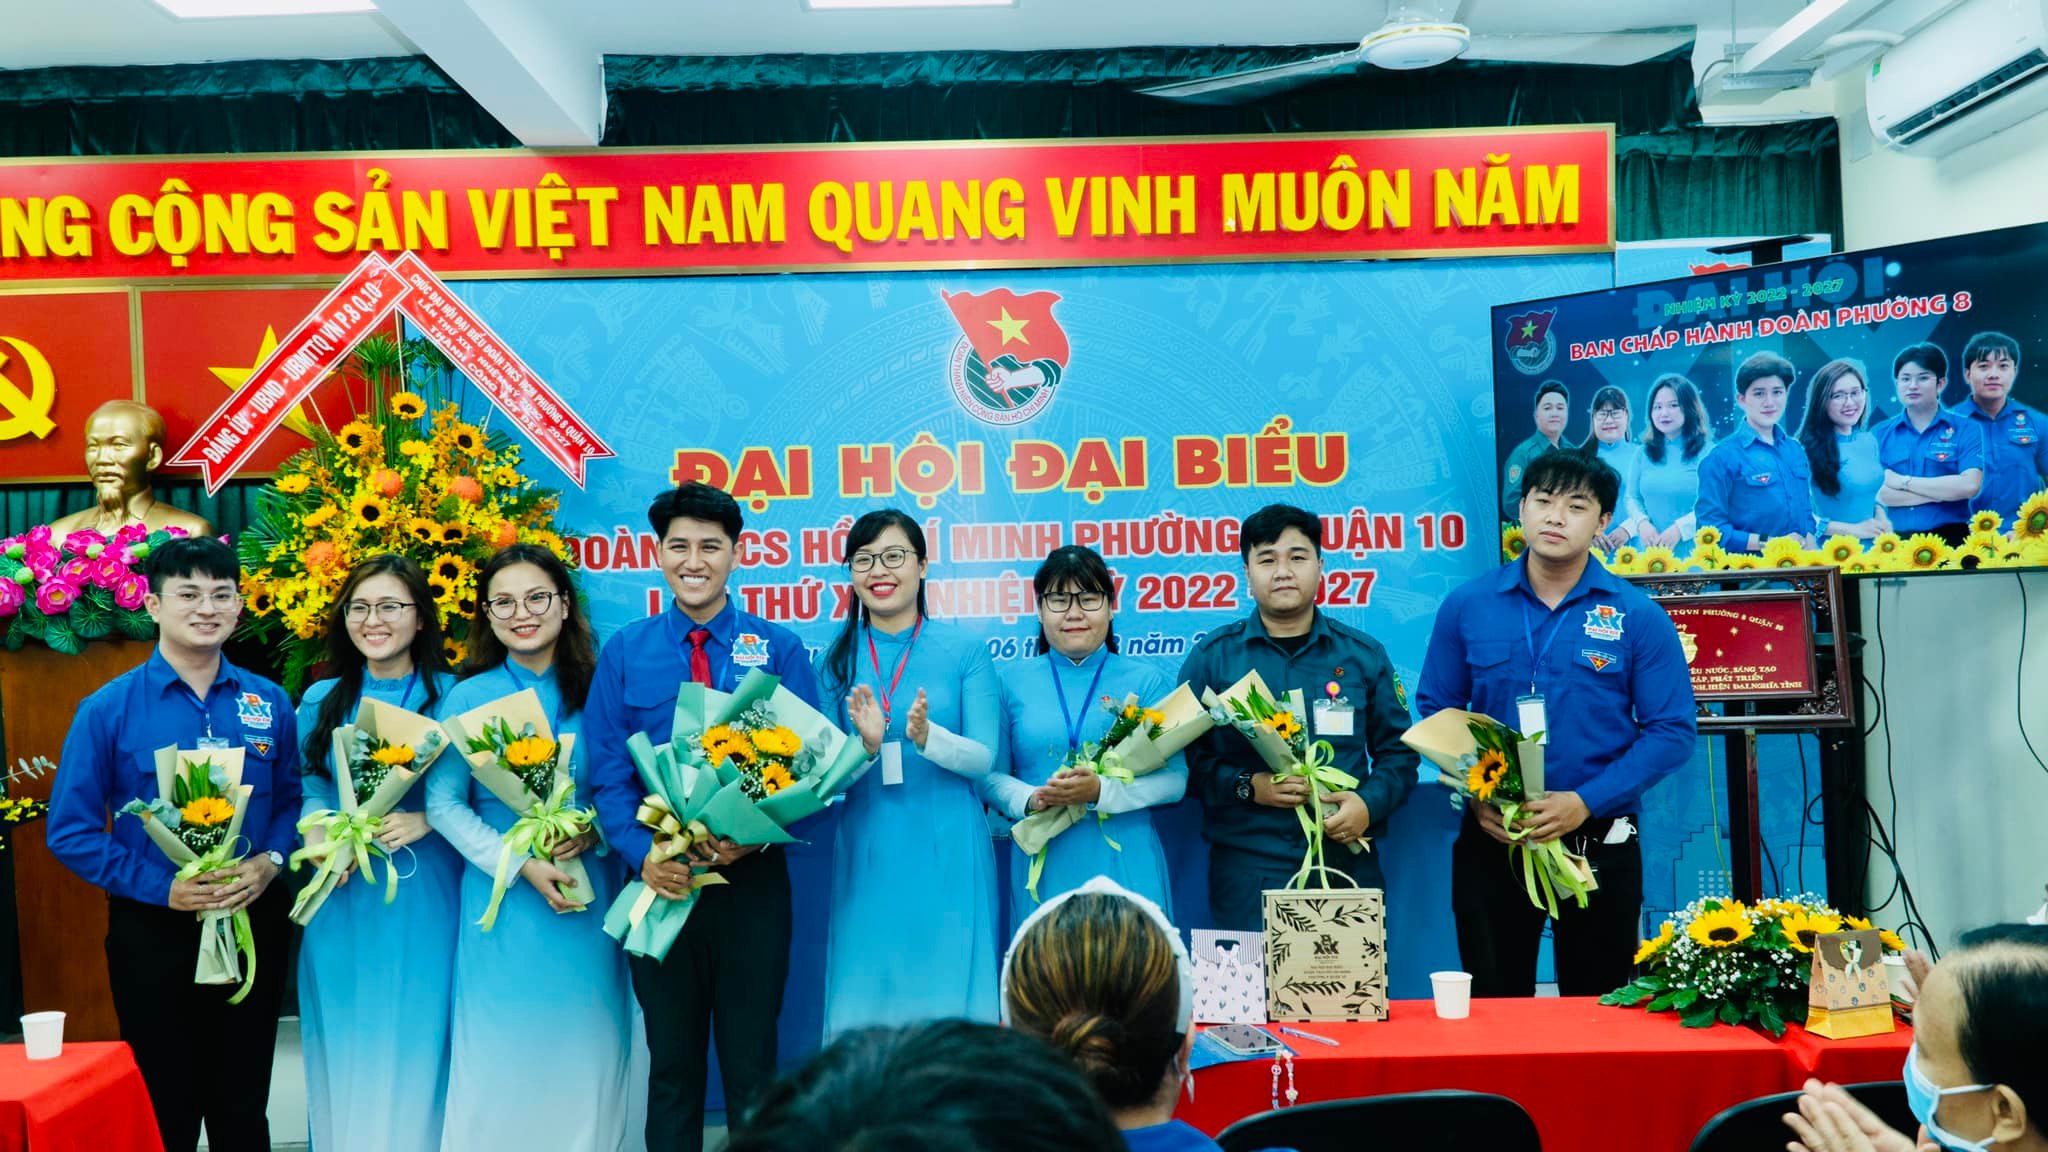 Image: Đại hội Đại biểu Đoàn TNCS Hồ Chí Minh Phường 8, Quận 10 Lần thứ XVIII, nhiệm kỳ 2022 - 2027